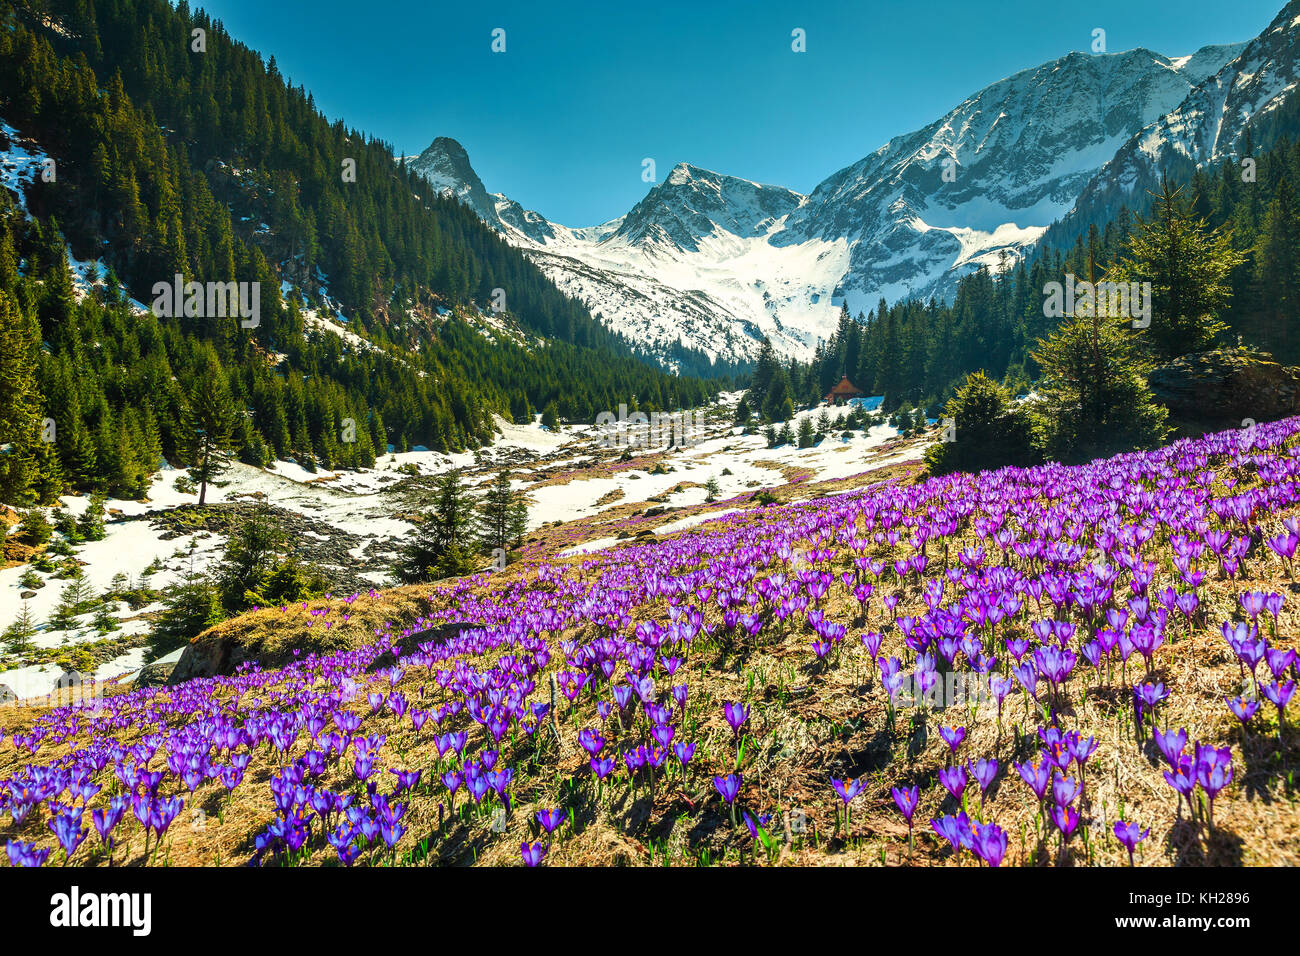 Erstaunlich bunten frischen lila Krokusse Blumen und atemberaubender Frühling Landschaft im Tal sambata, Fagaras Gebirge, Karpaten, Siebenbürgen, Romani Stockfoto